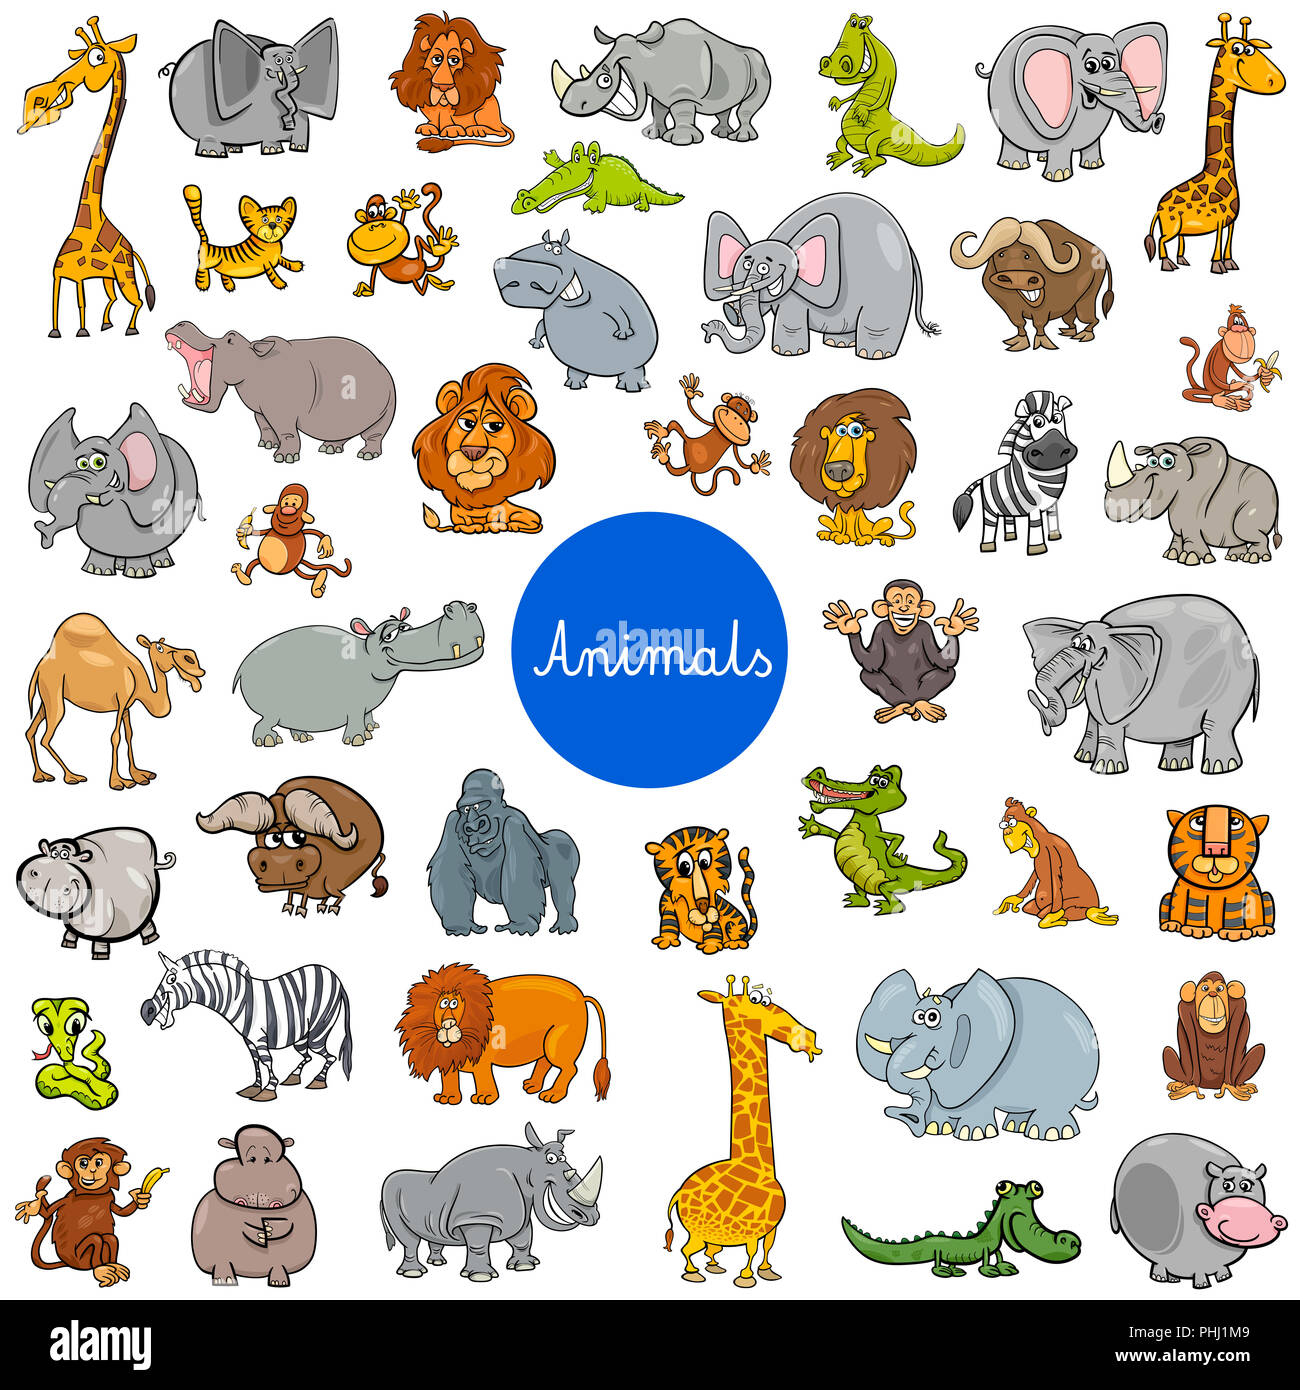 wild animal characters big set Stock Photo - Alamy